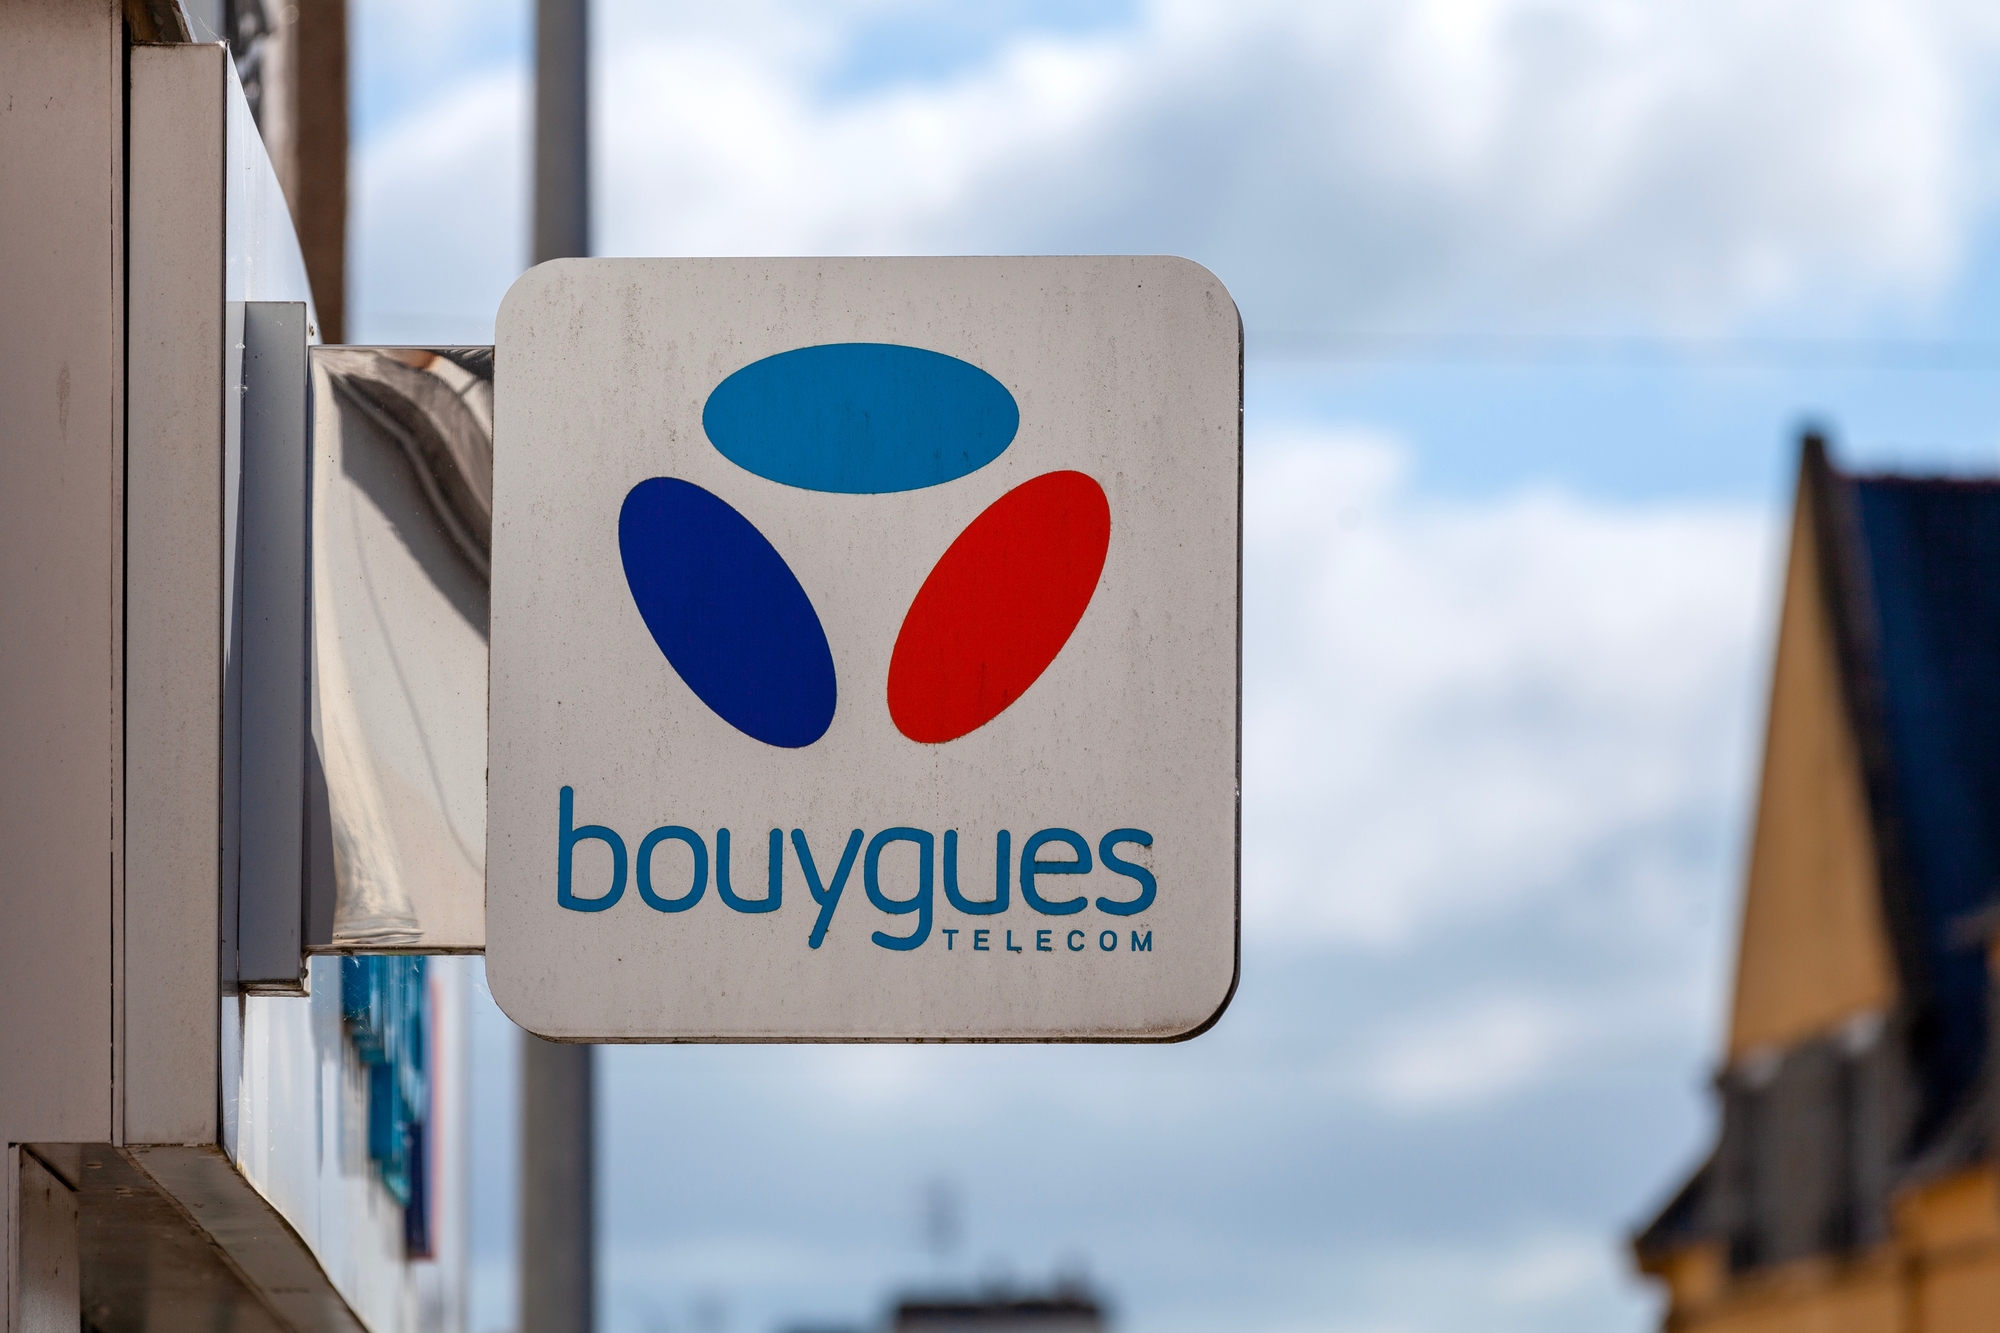 Pour ne pas rester sans connexion, Bouygues Telecom propose un service gratuit, 